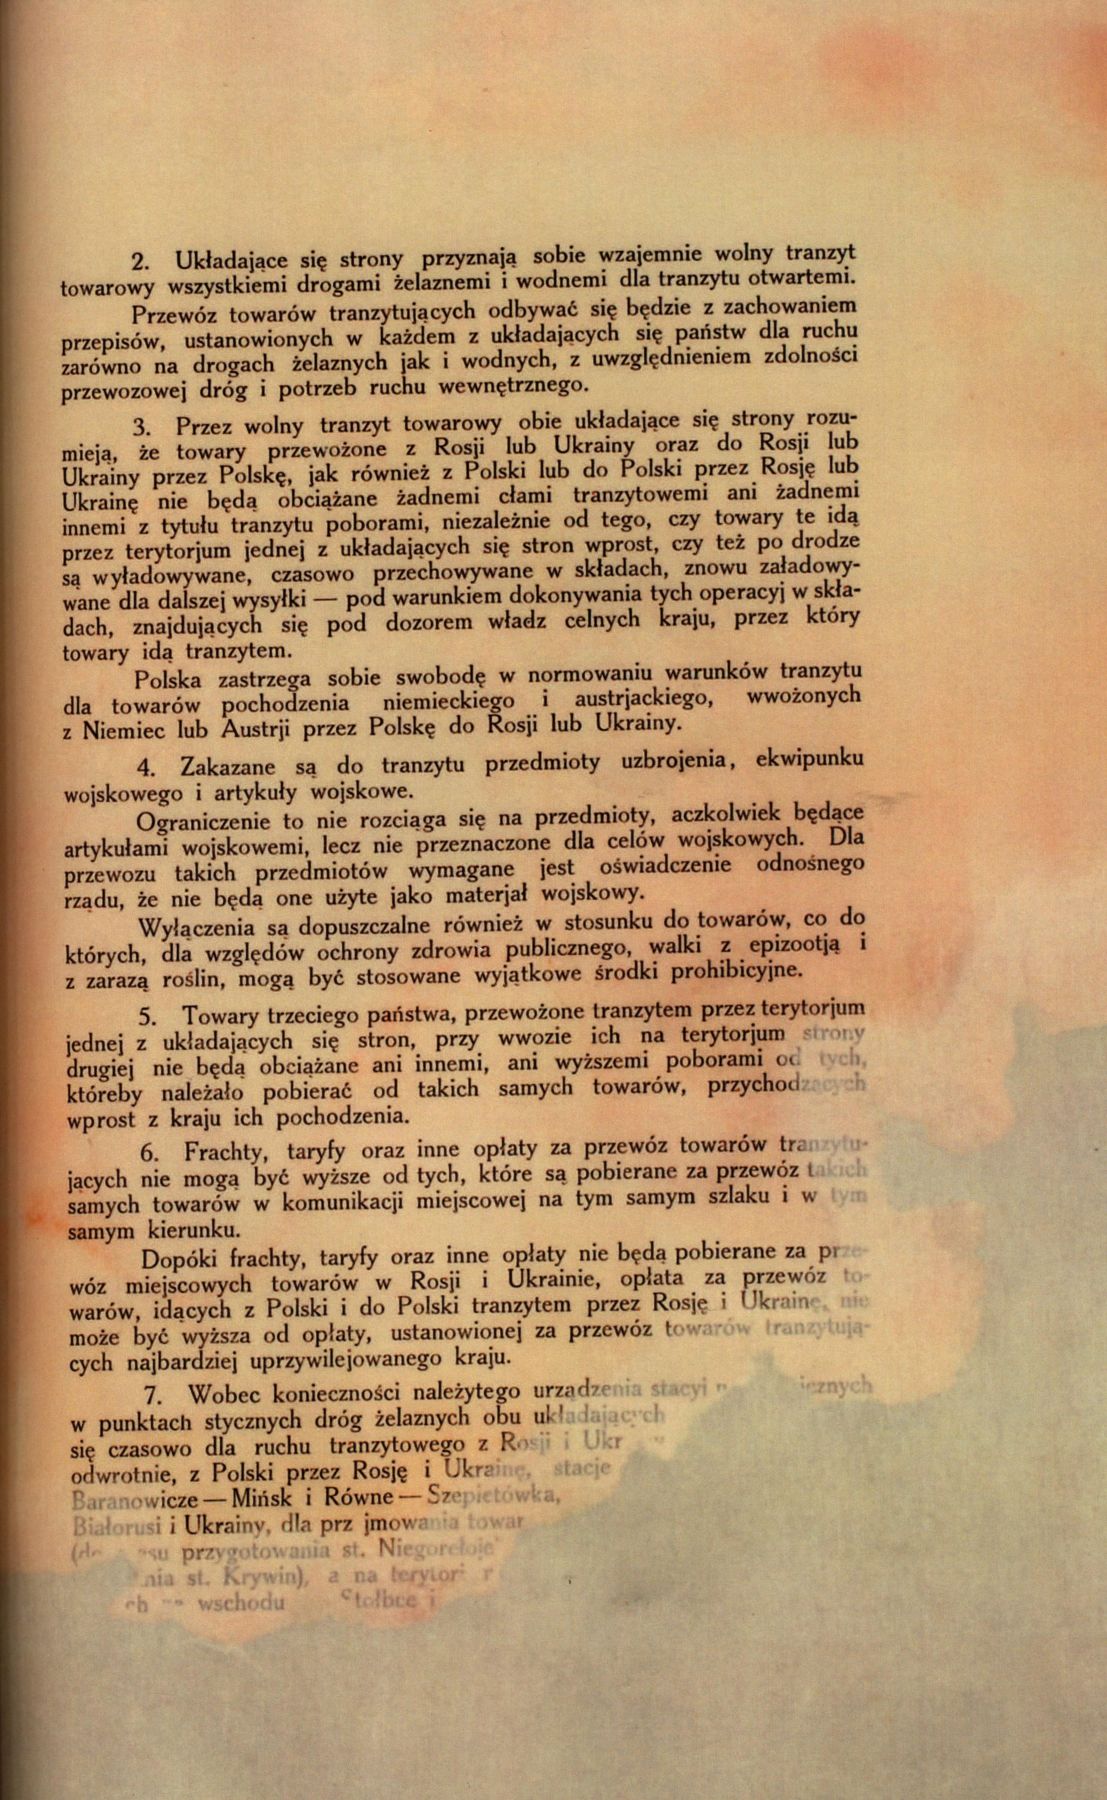 Traktat Pokoju między Polską a Rosją i Ukrainą podpisany w Rydze dnia 18 marca 1921 roku, s. 21, MSZ, sygn. 6739.